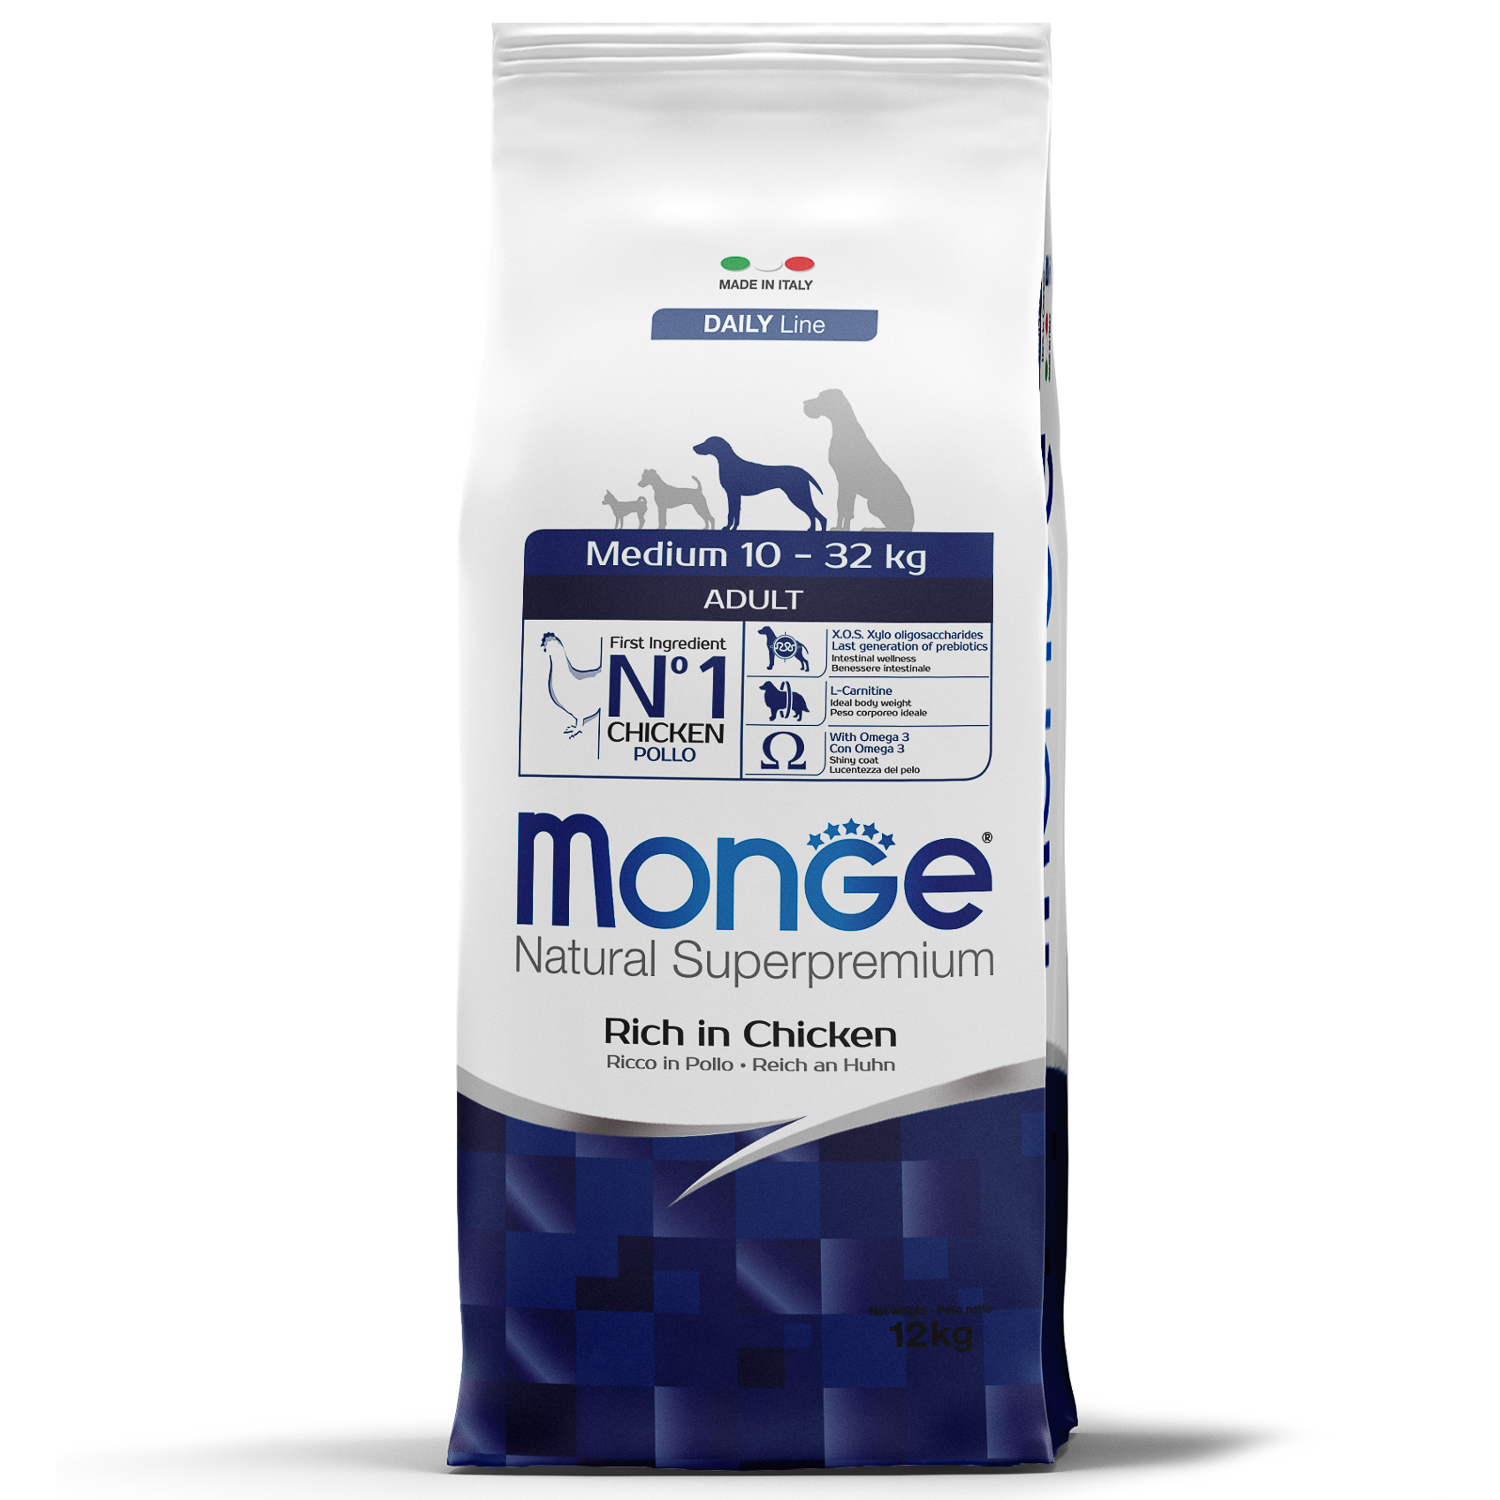 Monge Dog Medium корм для взрослых собак средних пород 12 кг